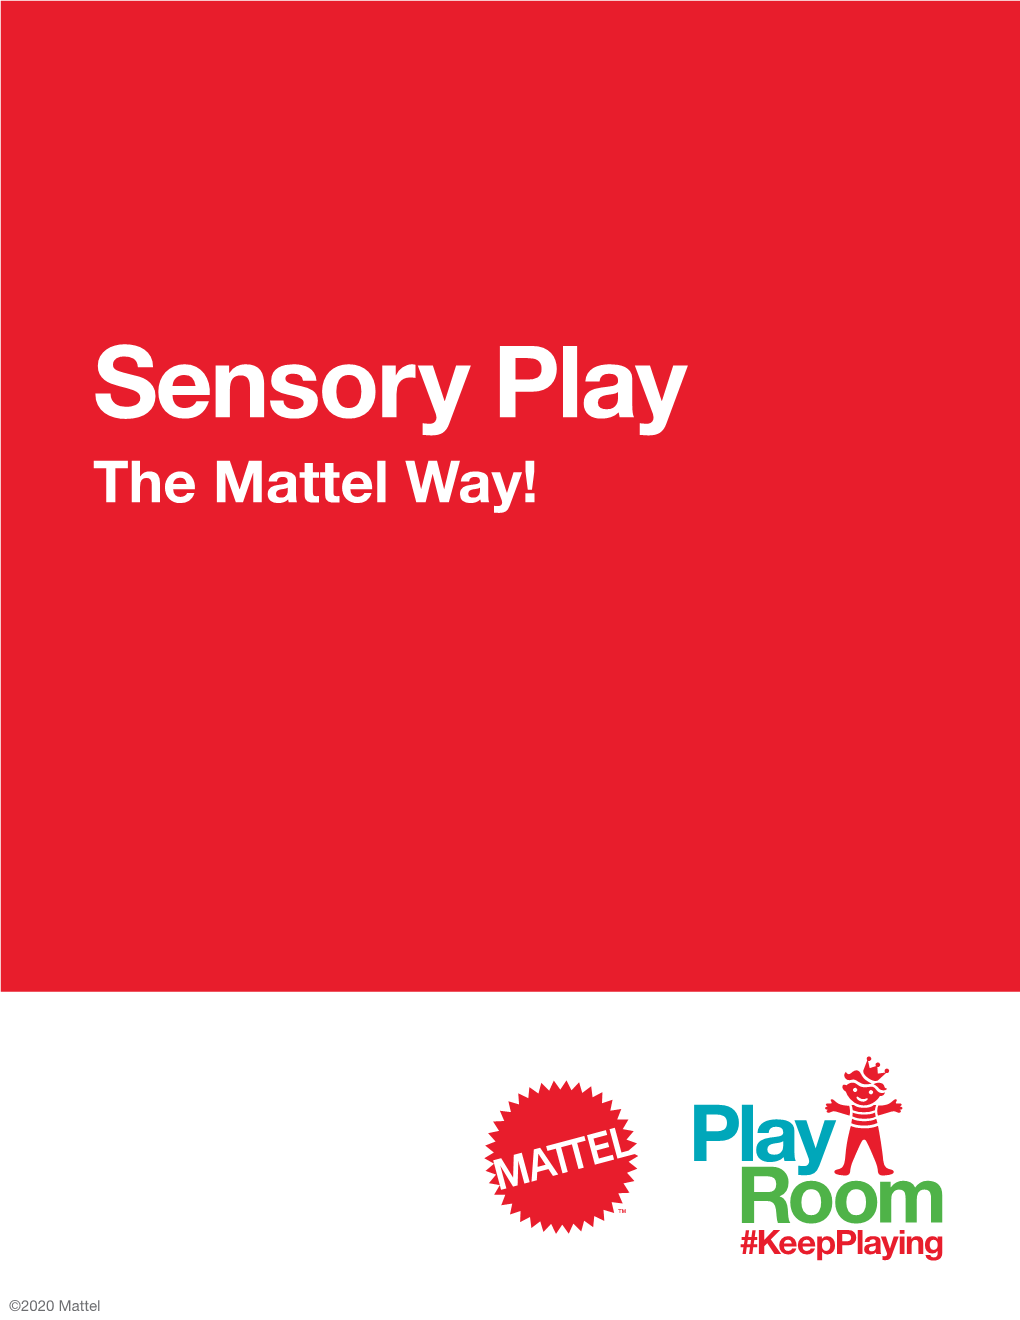 Sensory Play the Mattel Way!